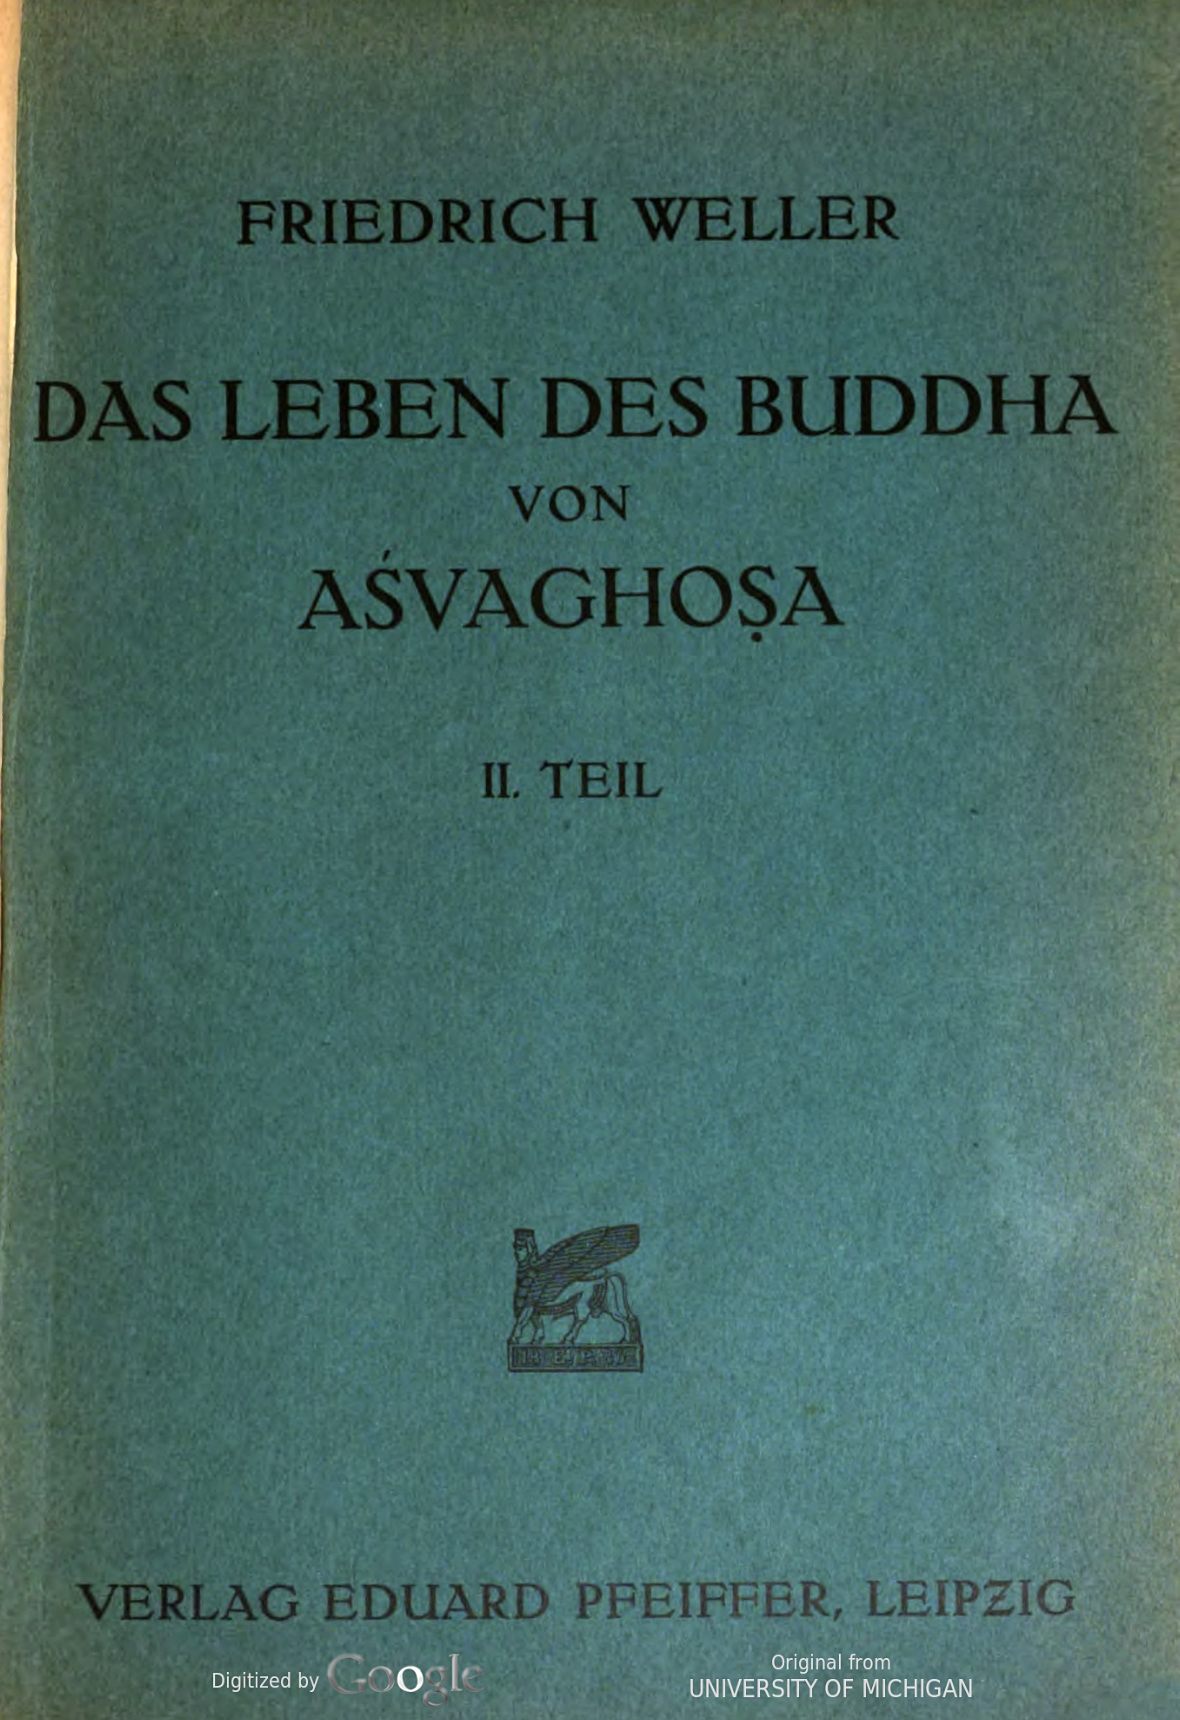 Das Leben des Buddha von Asvaghosa Tiel 2 1928-front.jpg